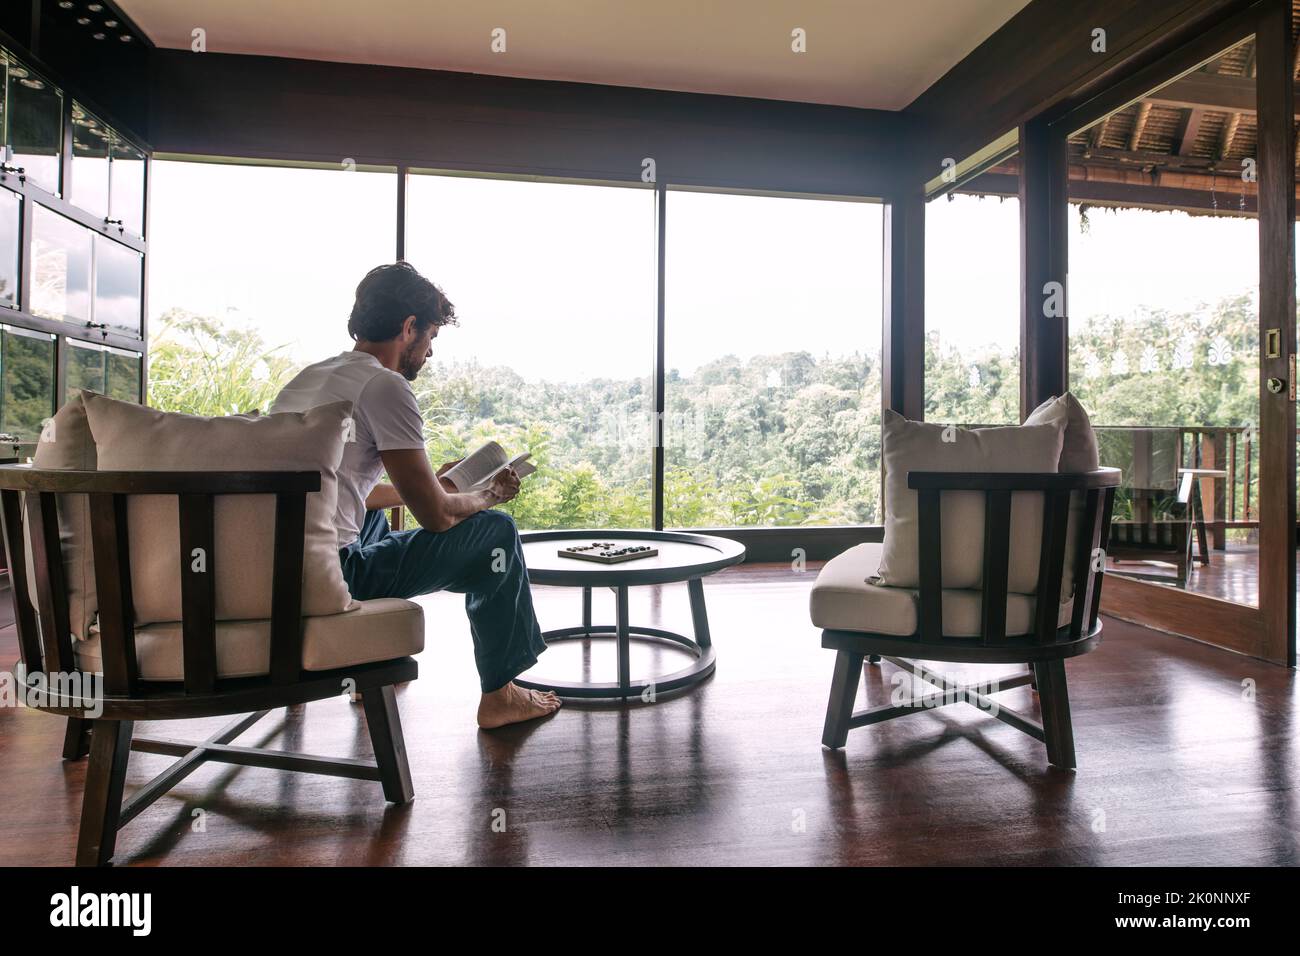 Innenaufnahme eines jungen Mannes, der in einem Hotelzimmer sitzt und ein Buch liest. Stockfoto